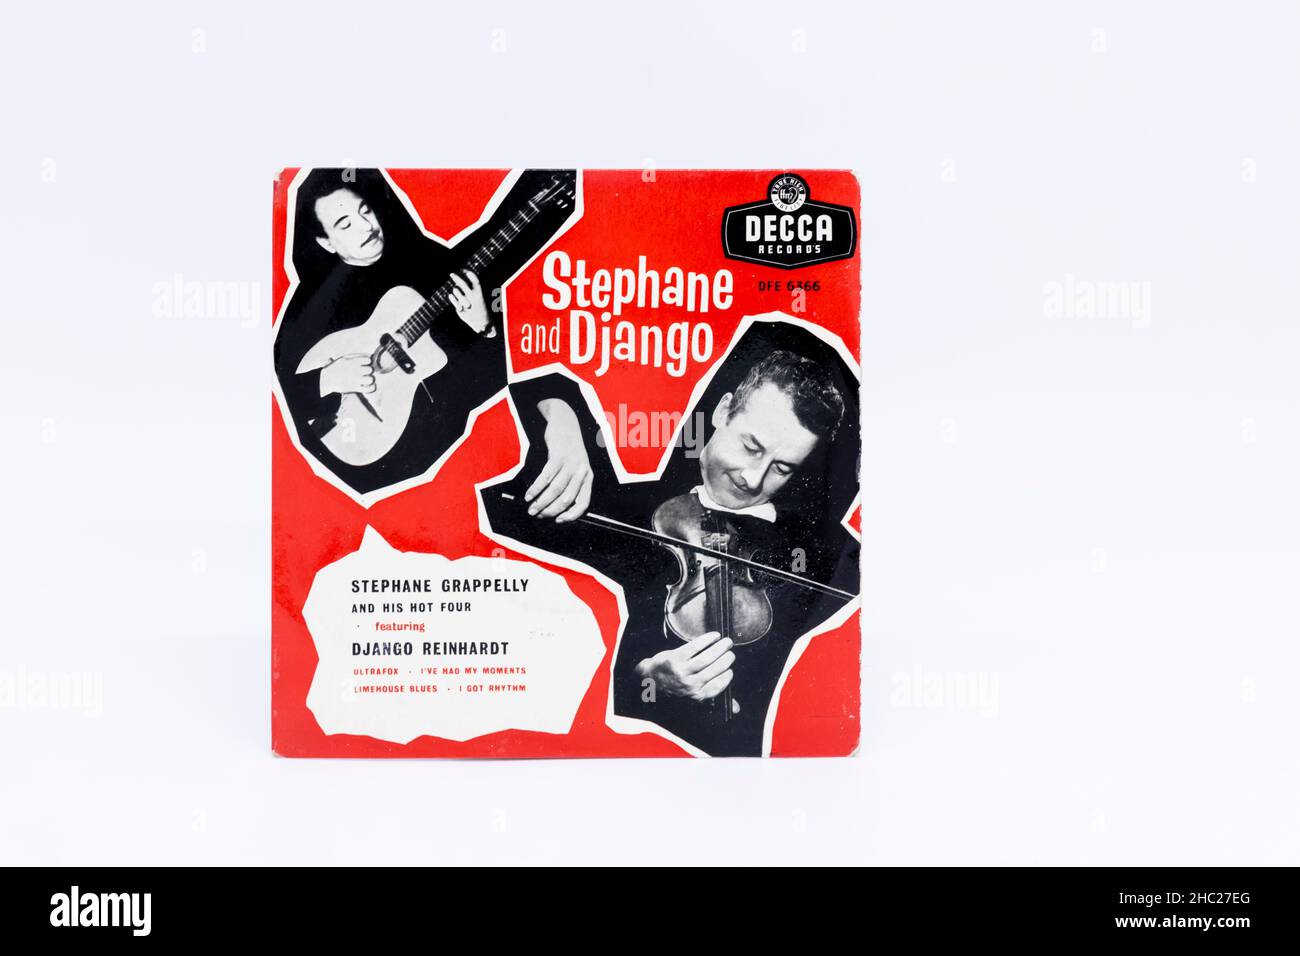 Couverture photo de l'ancien disque vinyle simple de 45 tr/min avec Stephane Grappeli et Django Reinhardt sur Decca records isolés sur fond blanc studio Banque D'Images